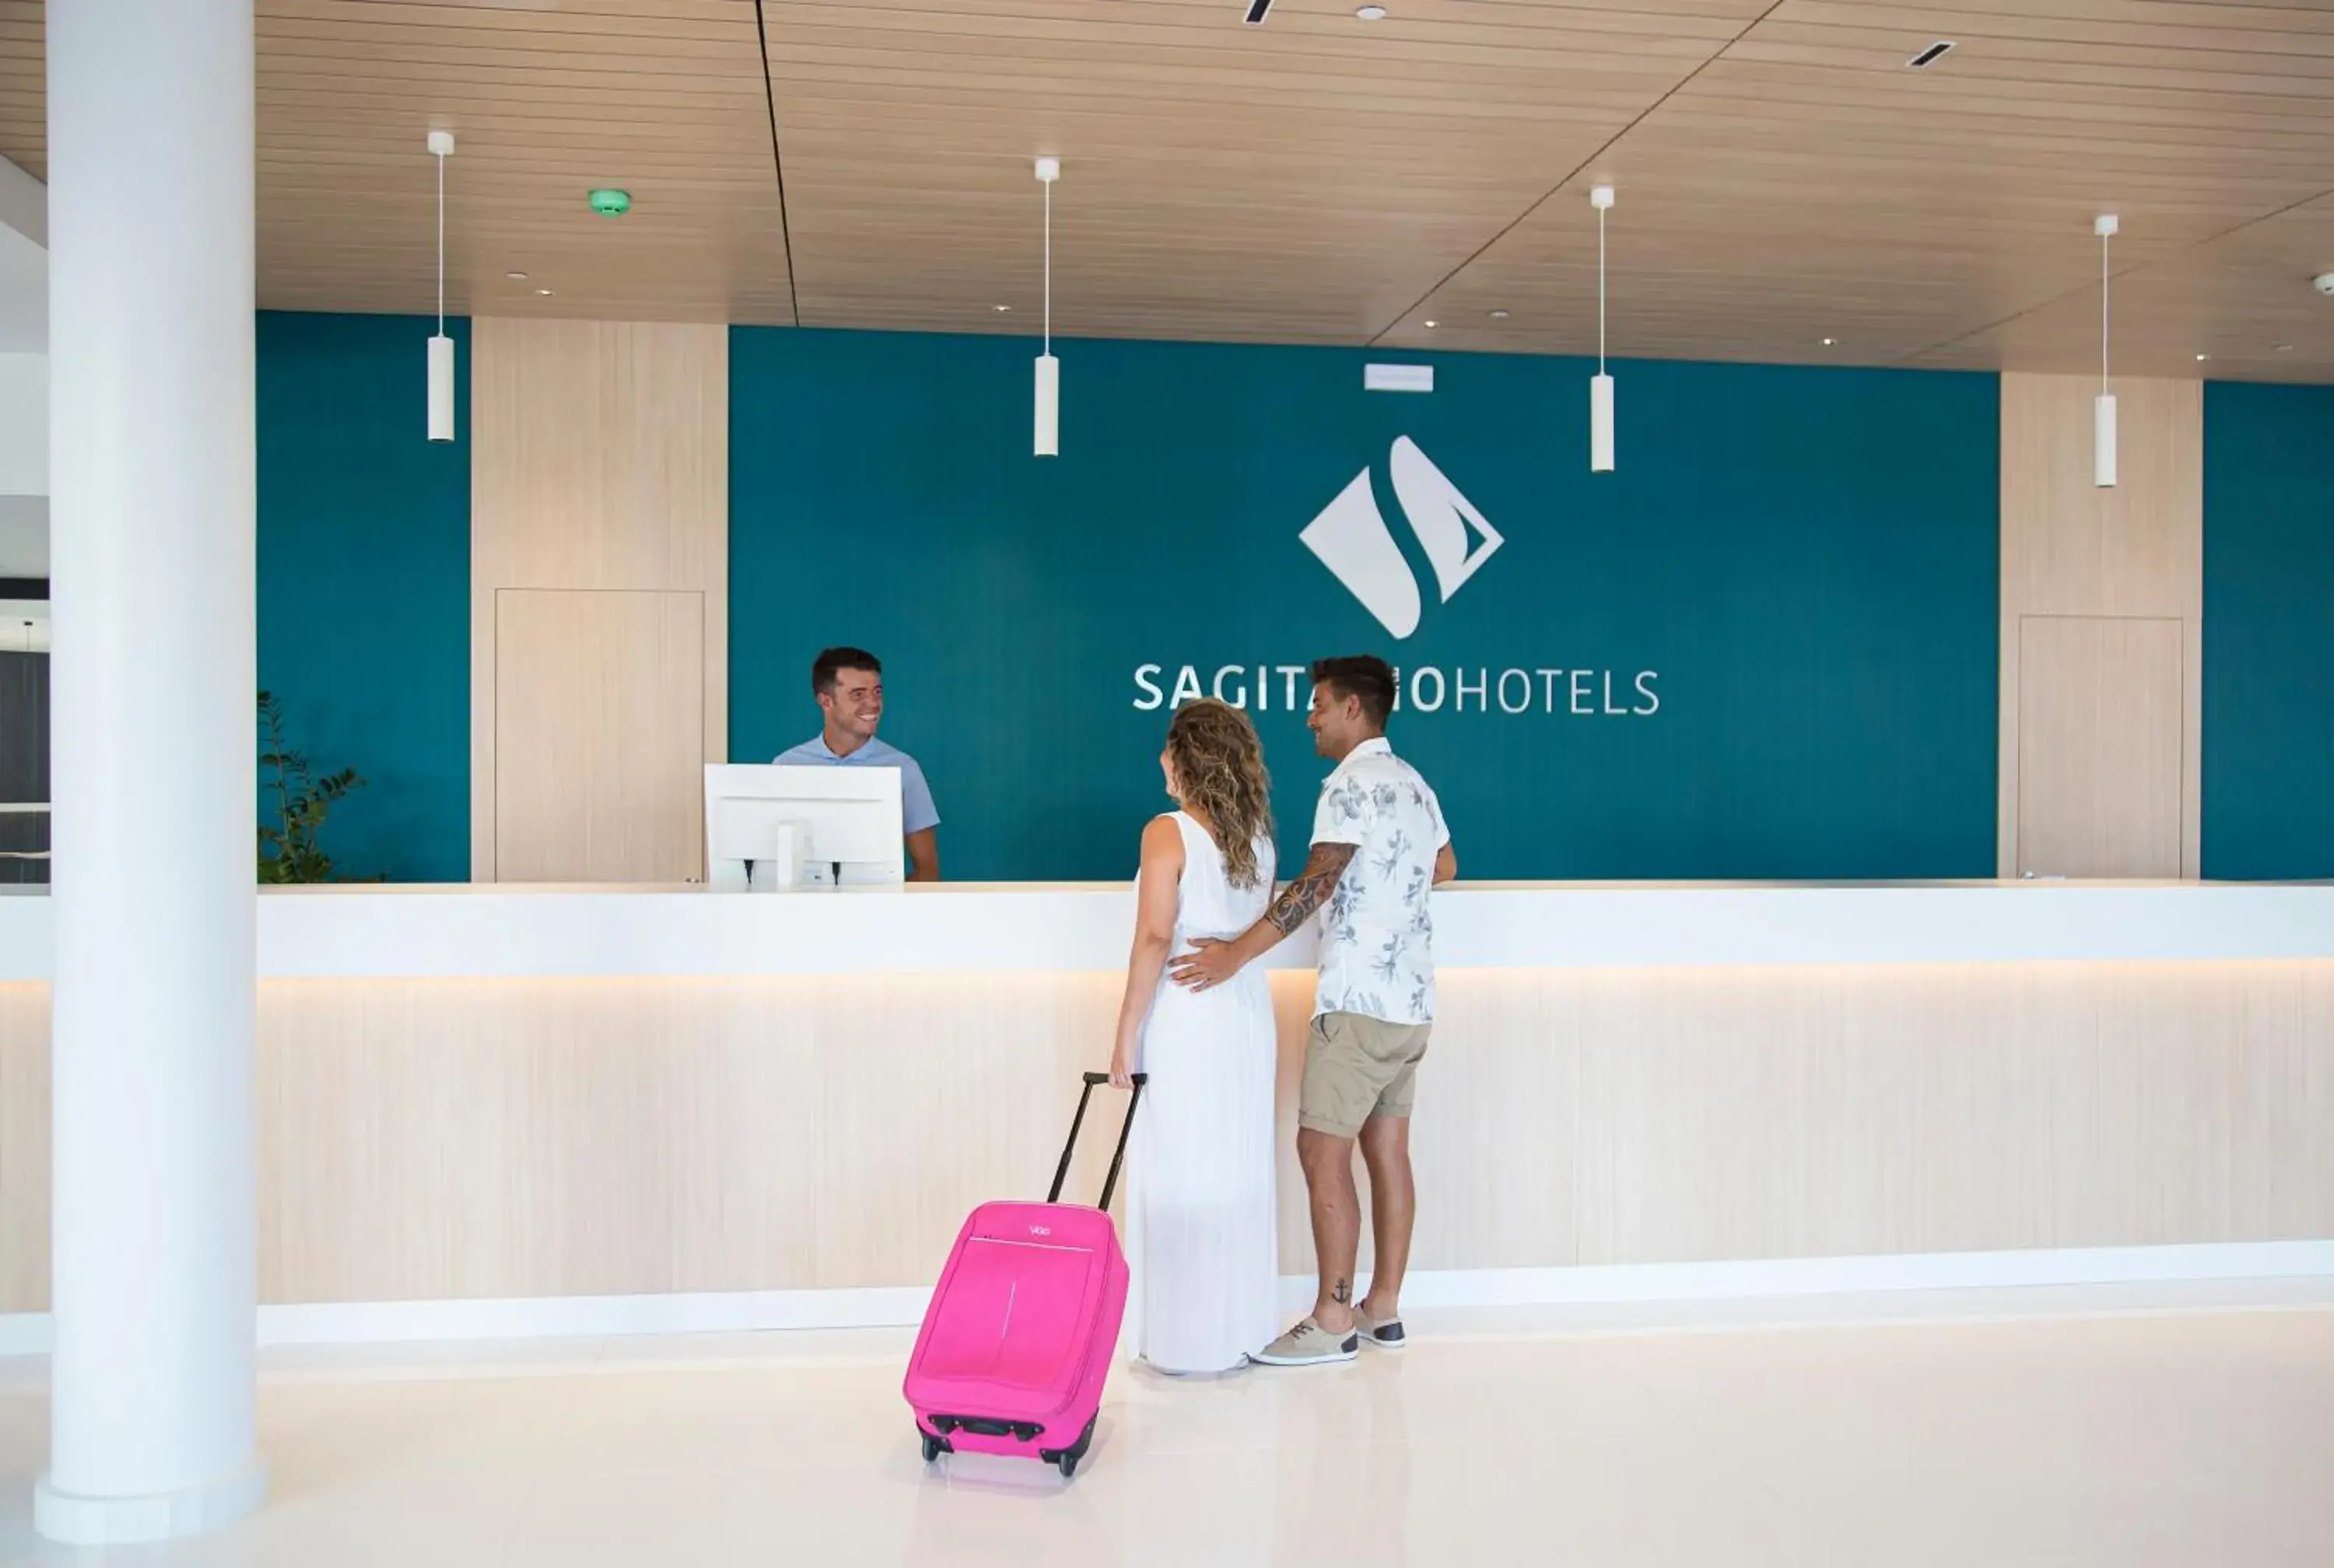 Lobby or reception in Hotel Gran Sagitario